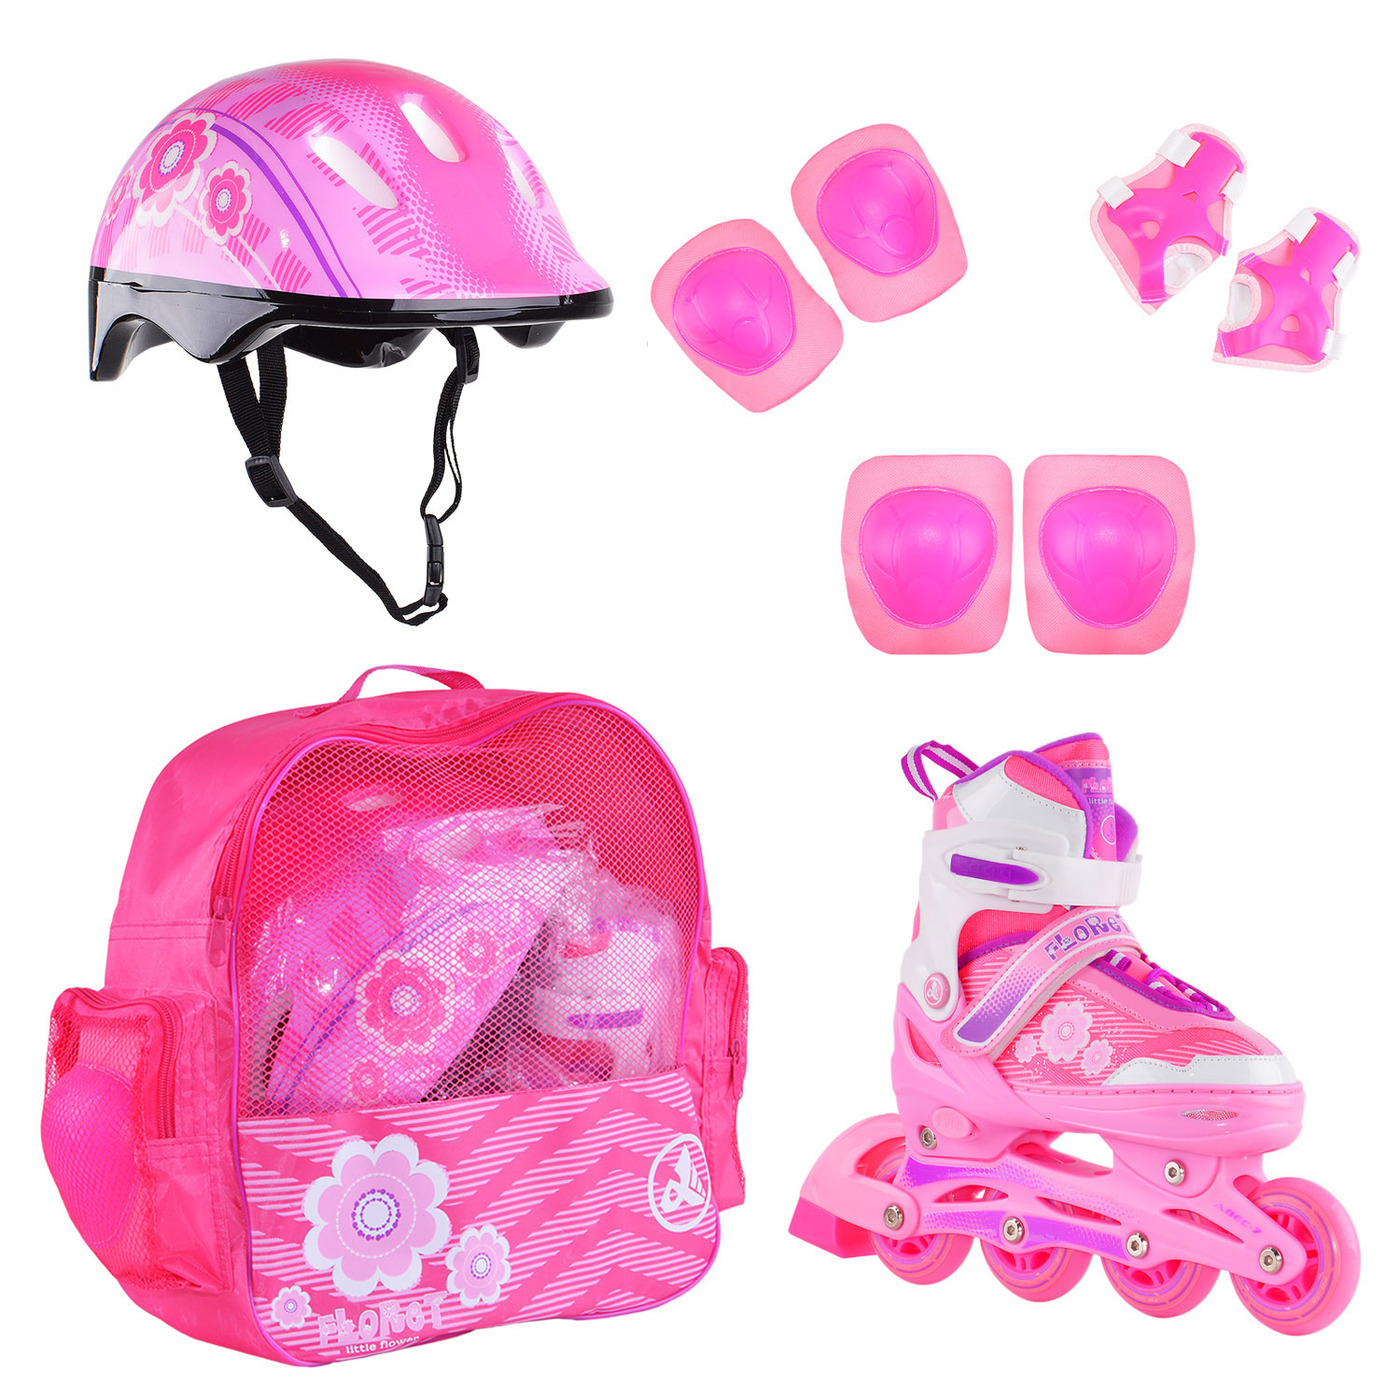 Раздвижные роликовые коньки Alpha Caprice FLORET Wh/Pink/Viol шлем, защита, сумка M:35-38 раздвижные роликовые коньки alpha caprice x team pink m